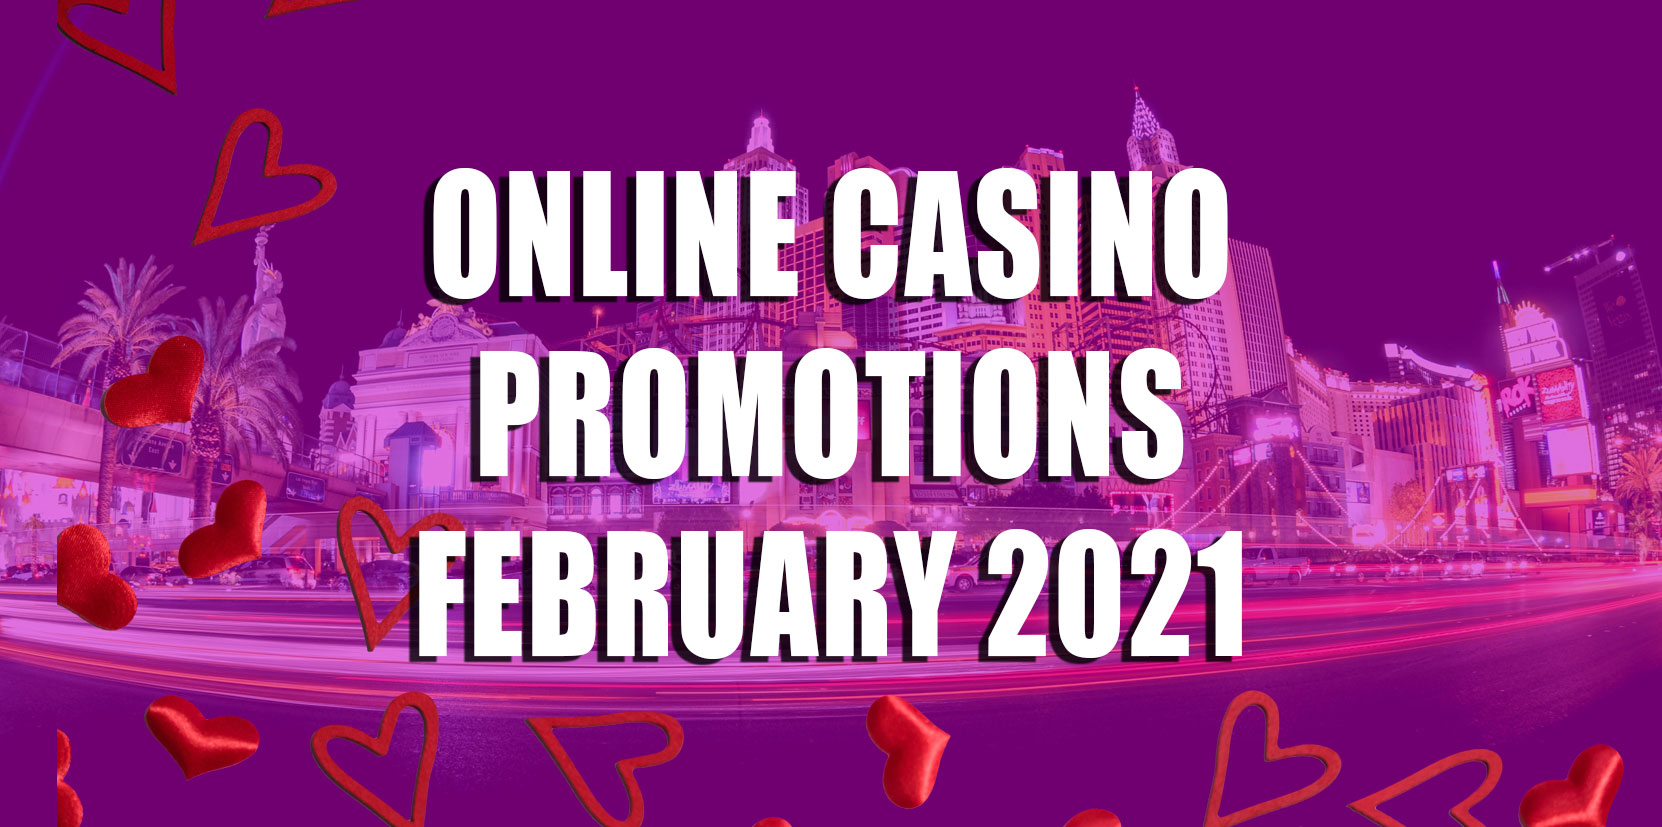 Casino.com February Promotion